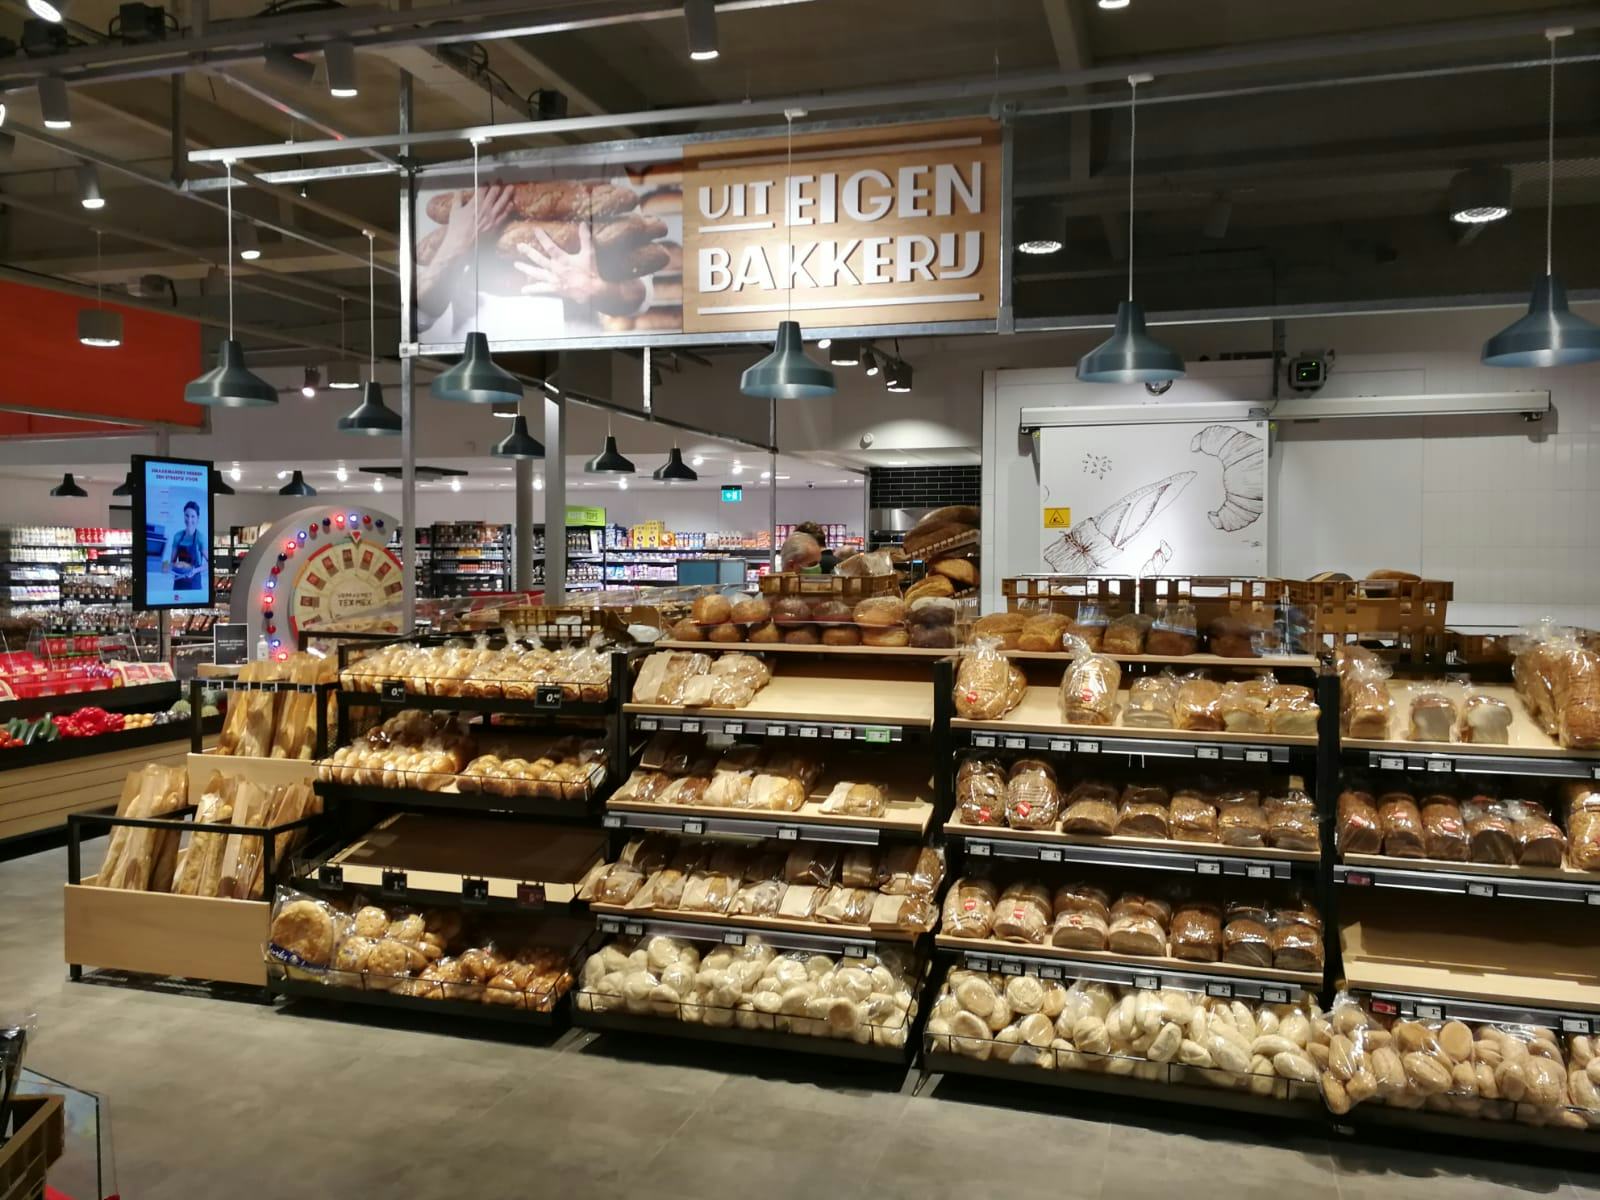 De broodafdeling van een supermarkt. Contract of niet, prijsstijgingen moeten in deze extreme situatie worden doorberekend om de voedselketen goed te laten functioneren, aldus ING-expert Cees Elemans. 